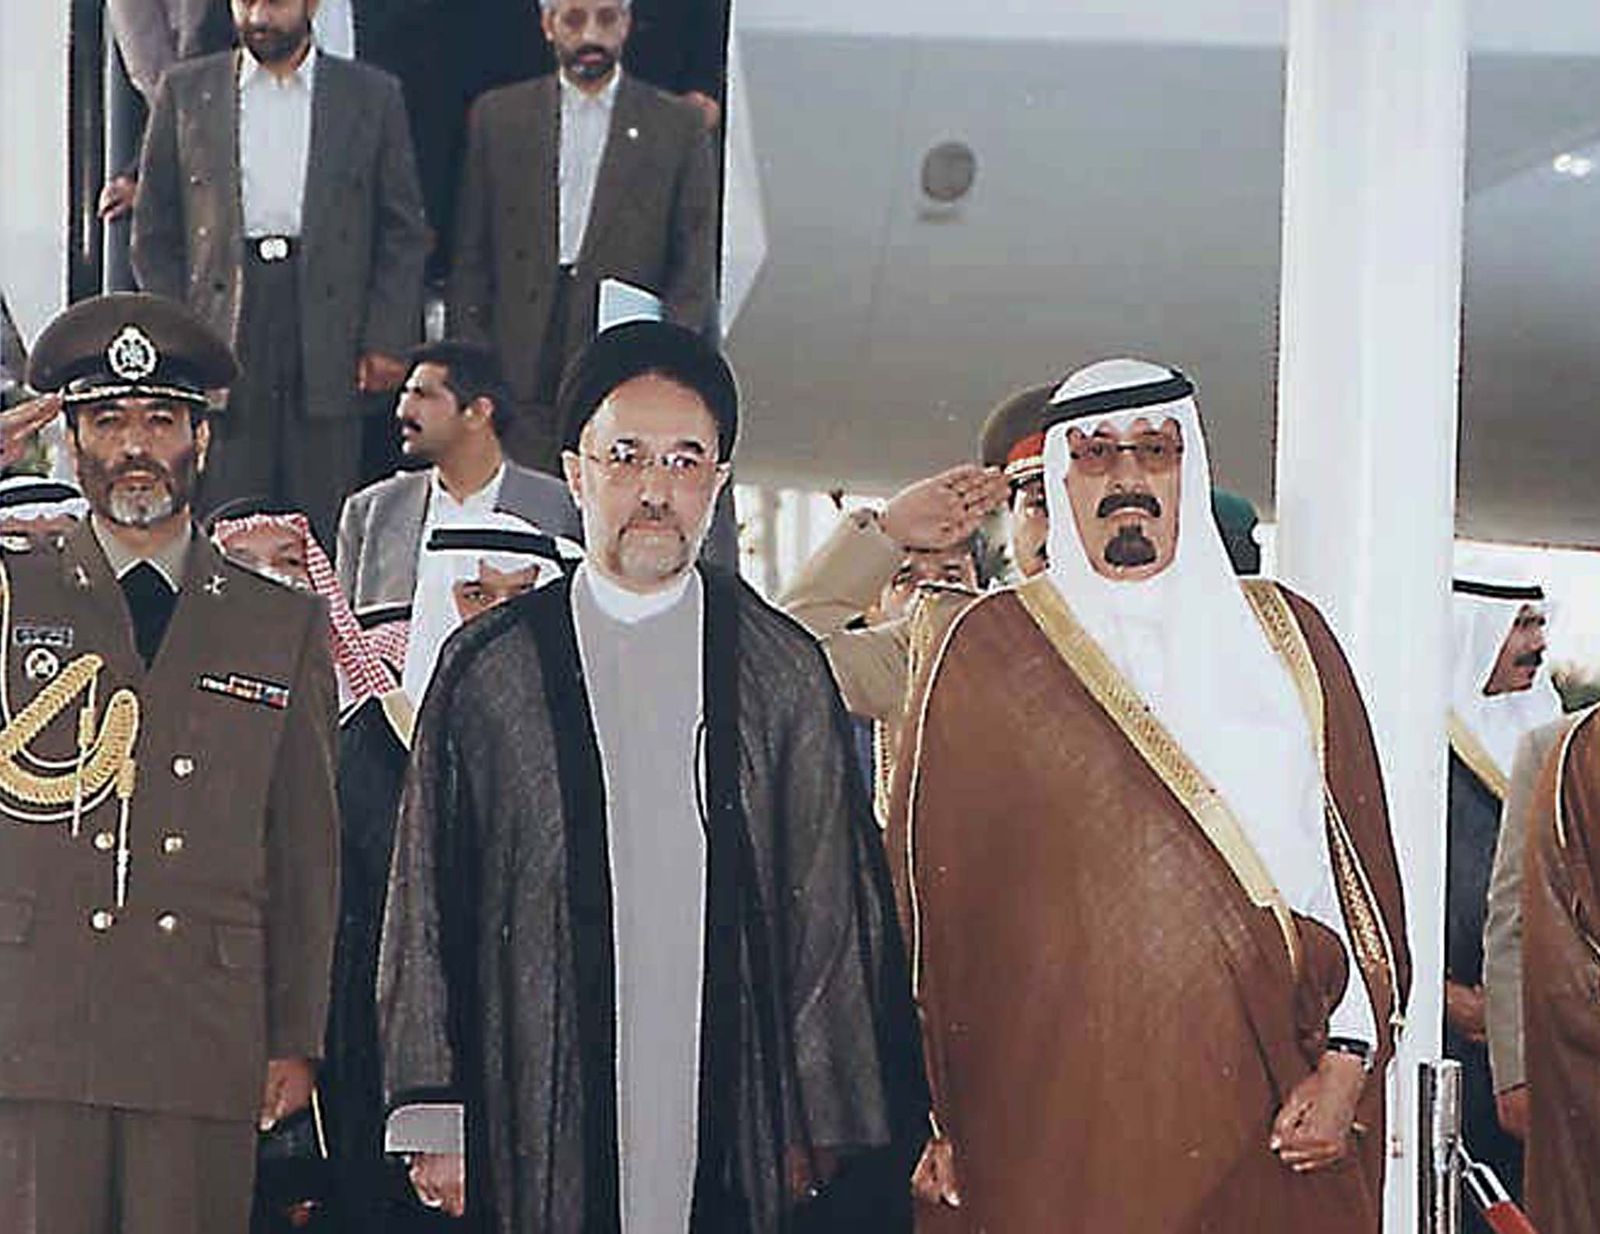 الرئيس الإيراني محمد خاتمي يصل إلى السعودية في أول زيارة لرئيس إيراني منذ عام 1979. 15 مايو 1999 - REUTERS